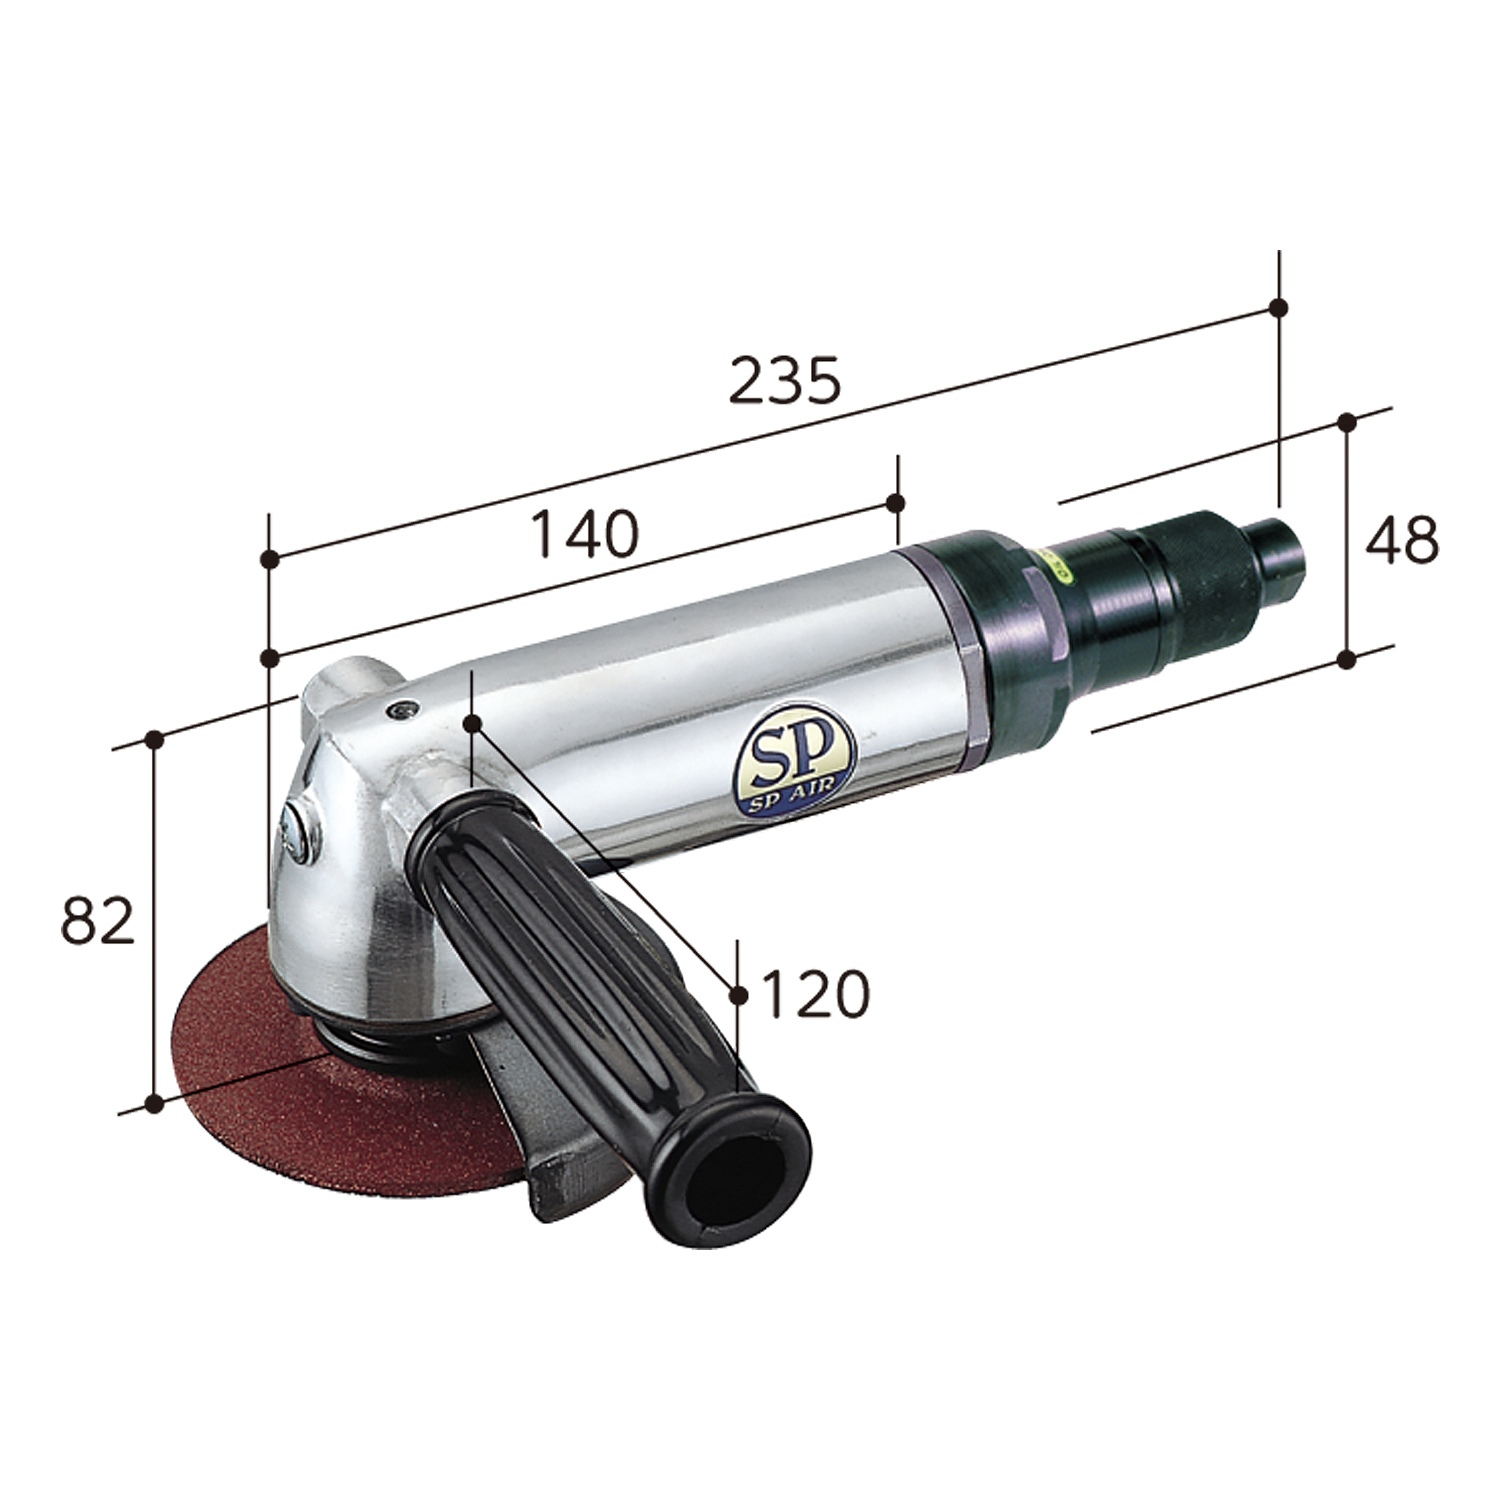 ベッセル SP ロングダイグラインダー 6mm - 道具、工具